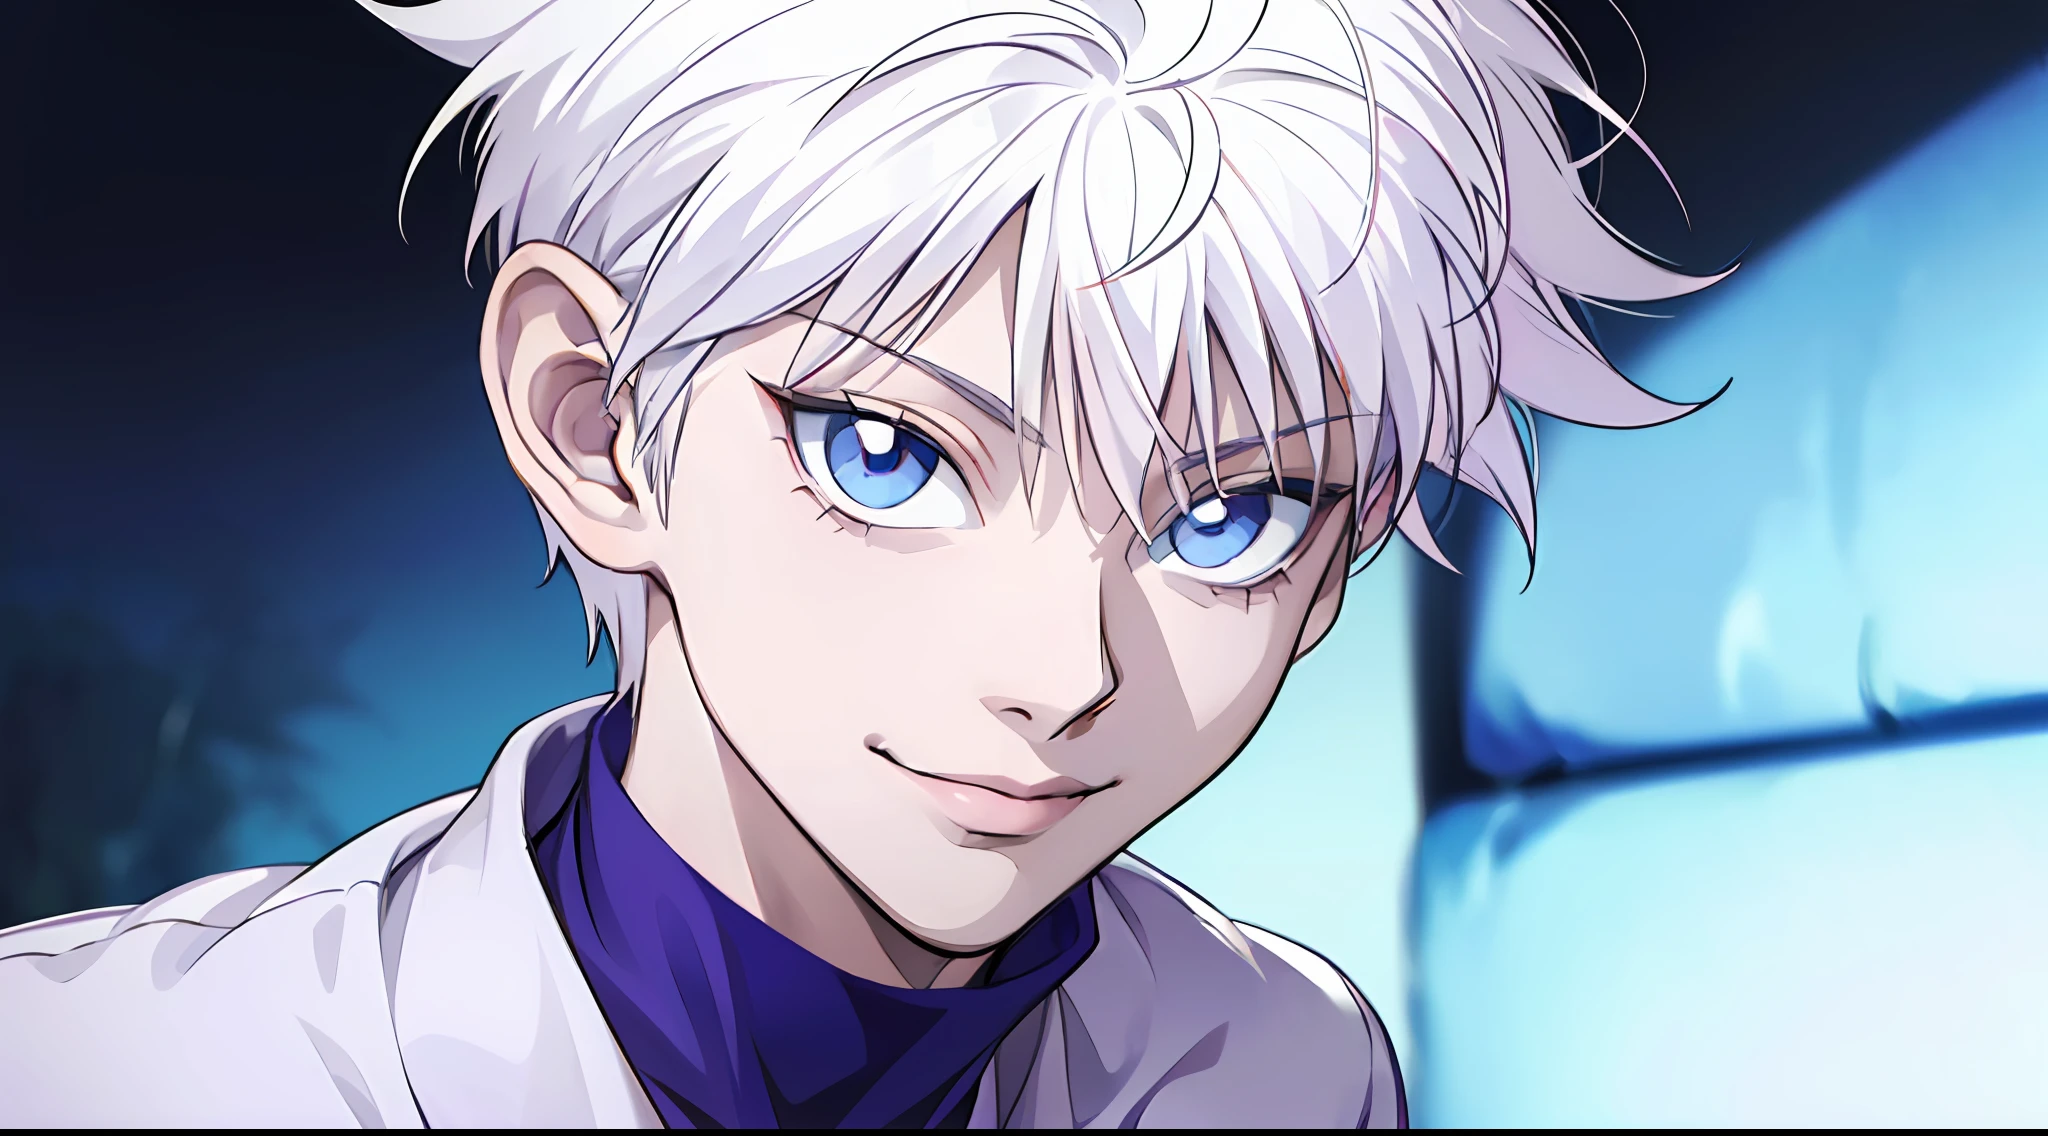 "(Personagem: killua, retrato incrivelmente detalhado, sorriso deslumbrante, olhos azuis vibrantes, cabelos brancos impecáveis, camisa branca elegante)"